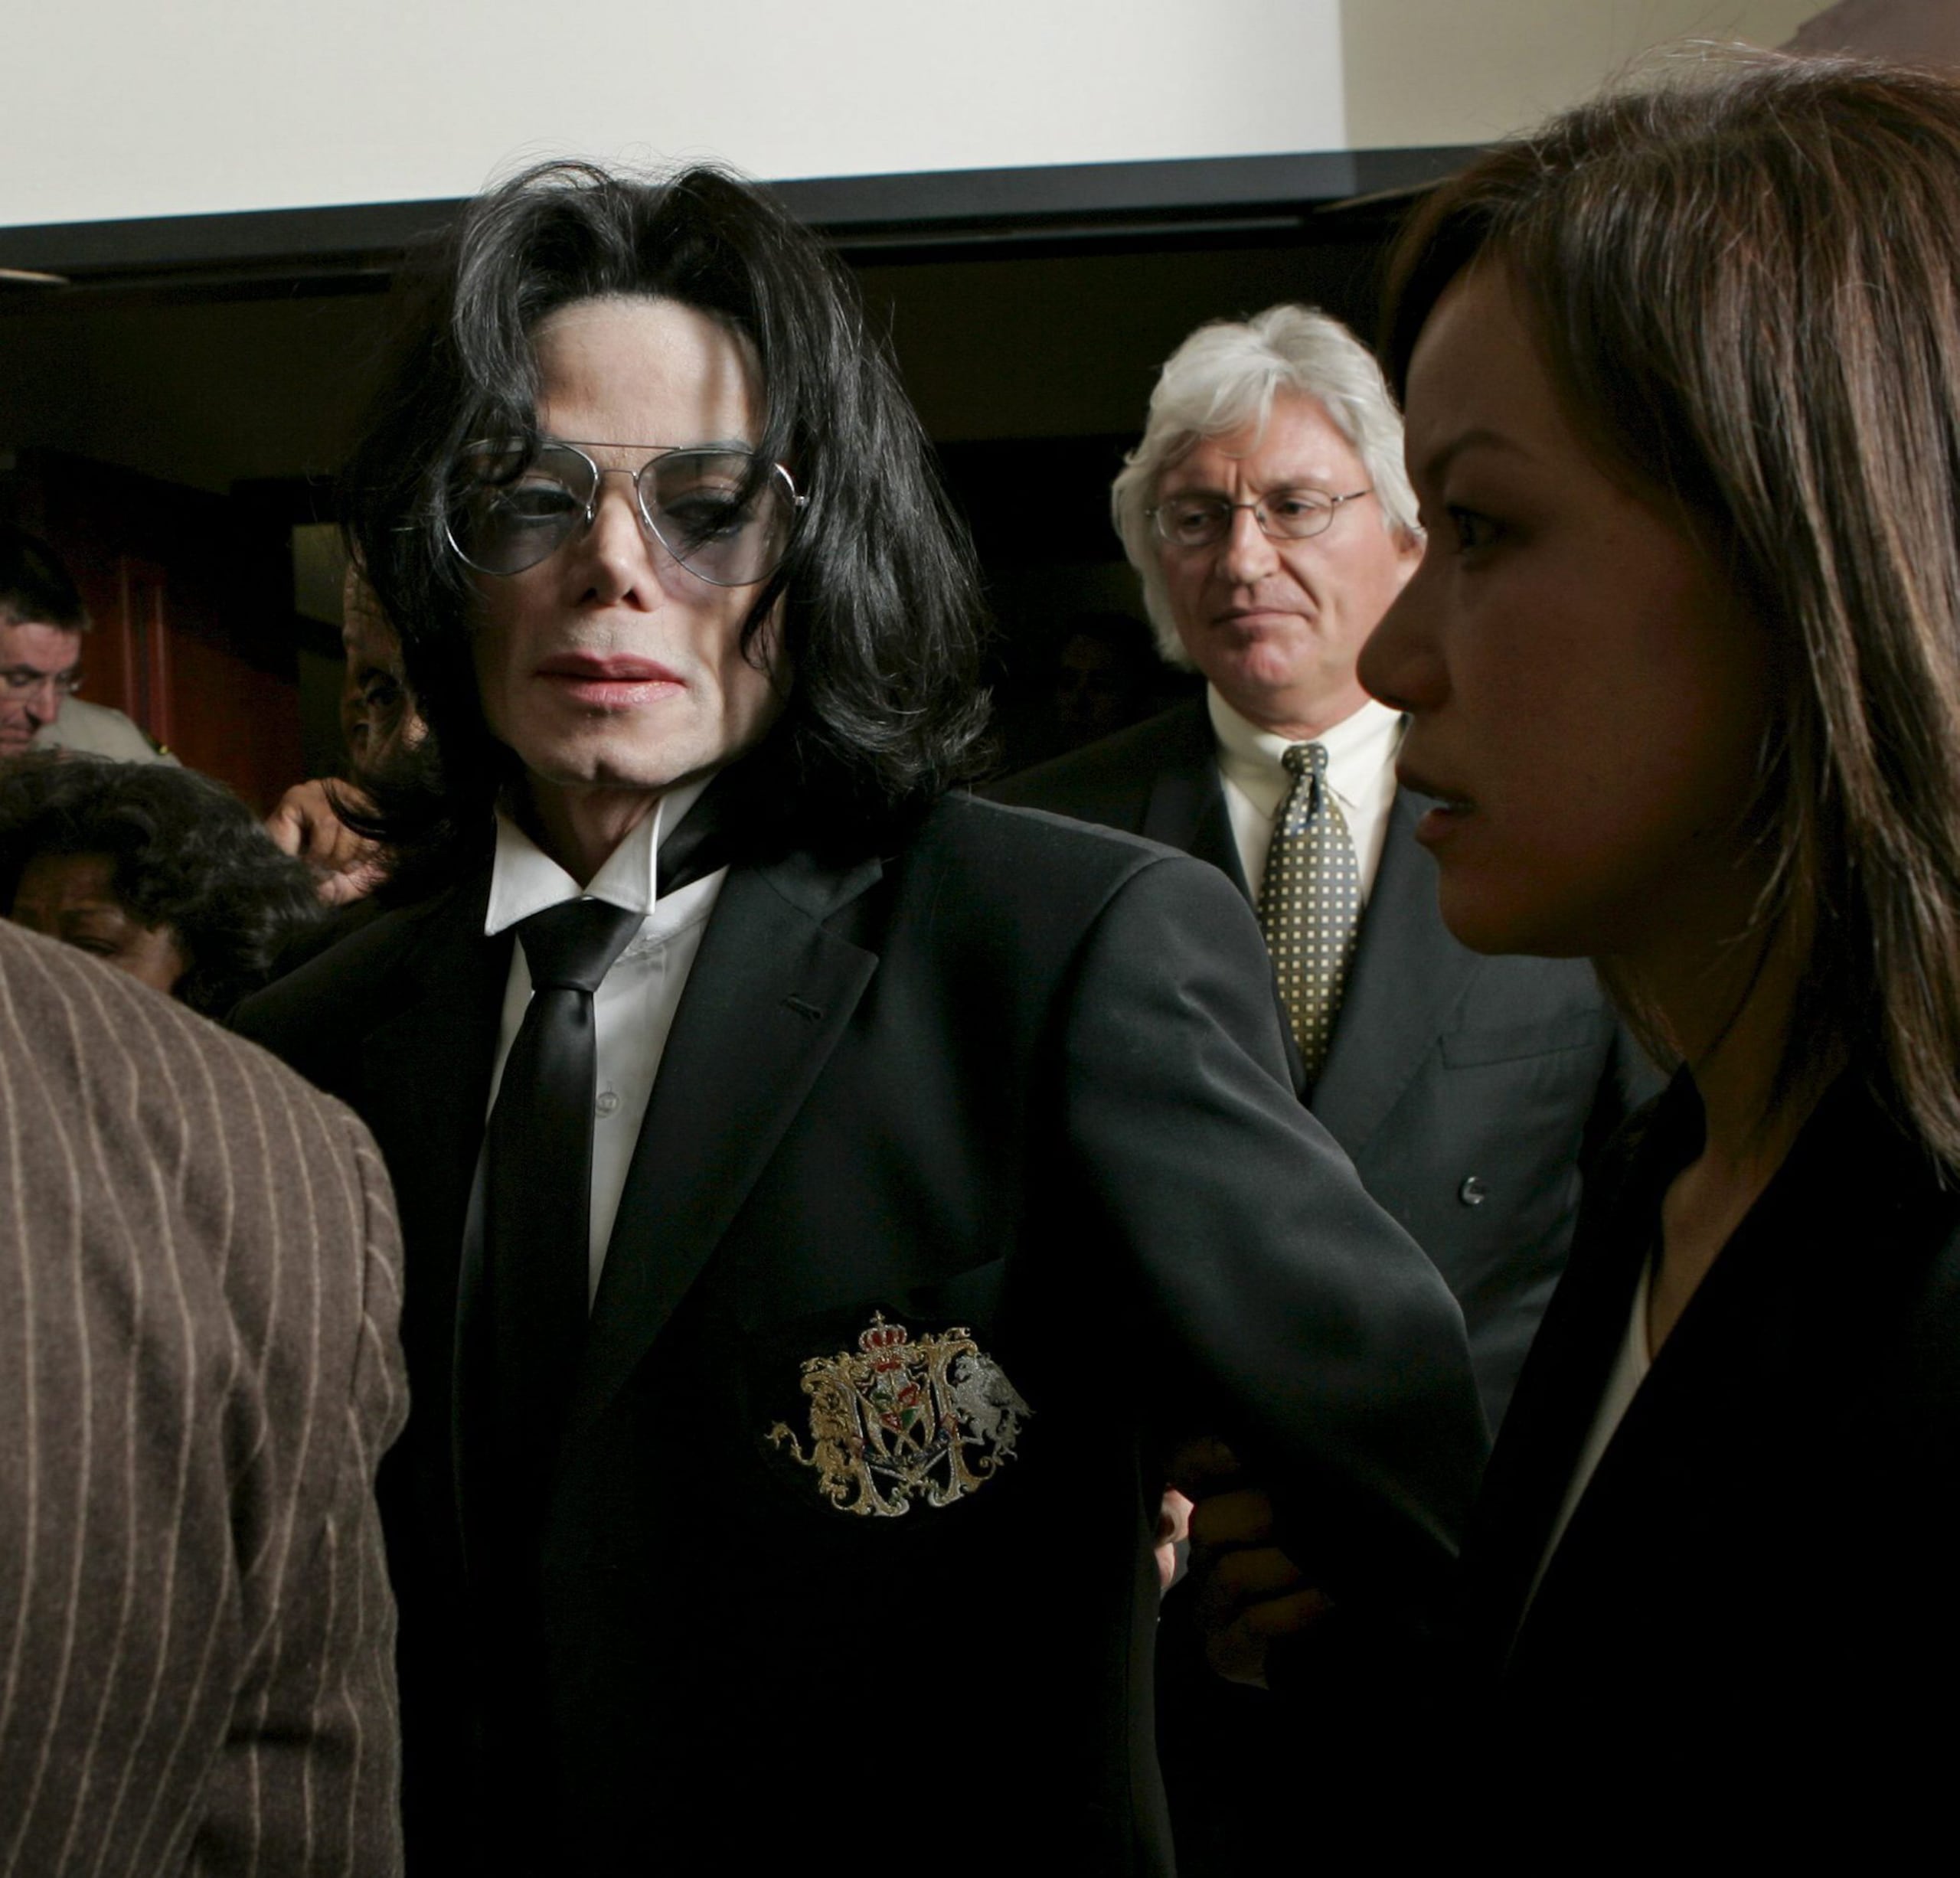 Michael Jackson a la salida, junto a sus abogados Thomas Mesereau Jr. y Susan Yu, de la corte de Santa Bárbara, a donde acudió para escuchar el veredicto al que llegó el jurado el 13 de junio de 2005. El jurado encontró a Michael Jackson no culpable de los 10 cargos que pesaban contra él, cuatro de ellos por presunto abuso sexual.